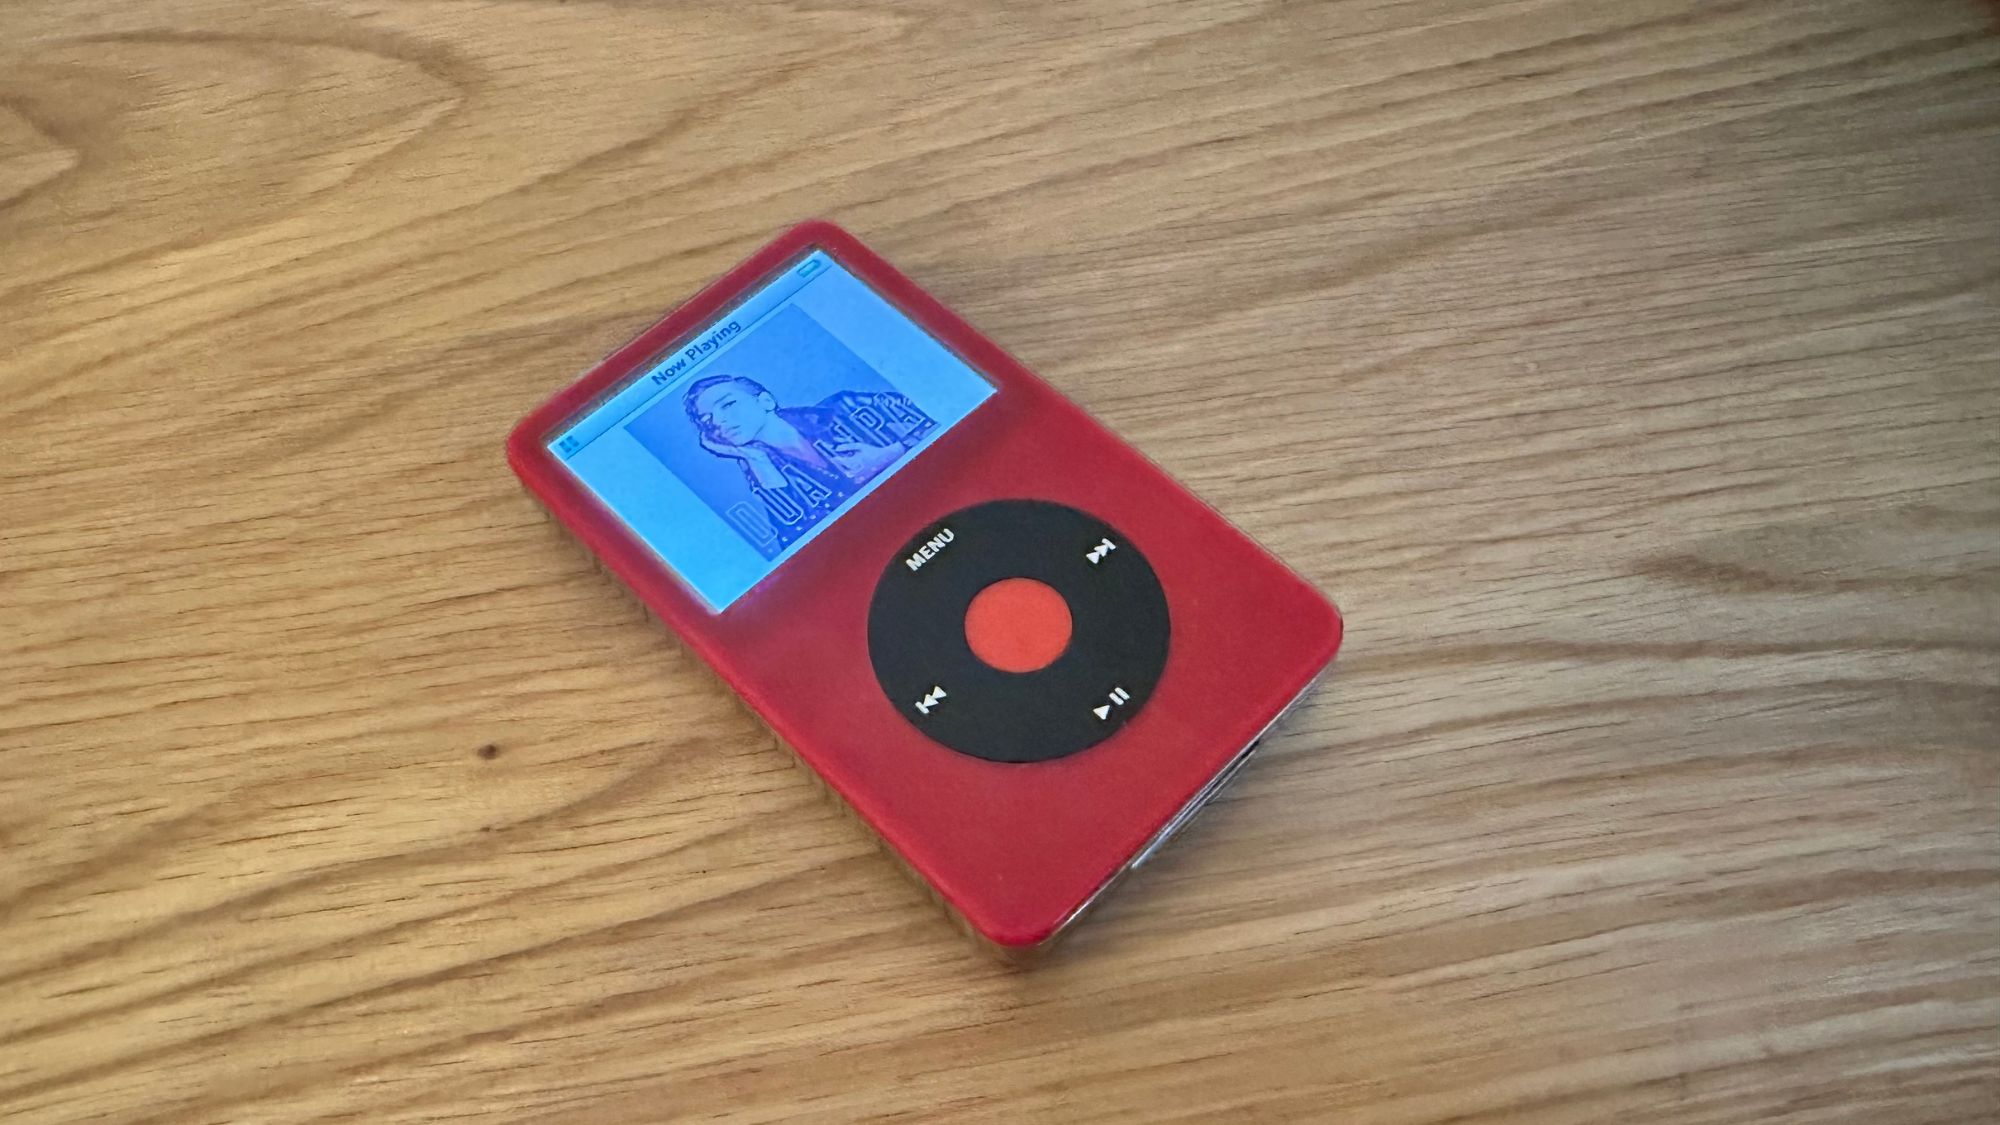 Video iPod di atas permukaan kayu